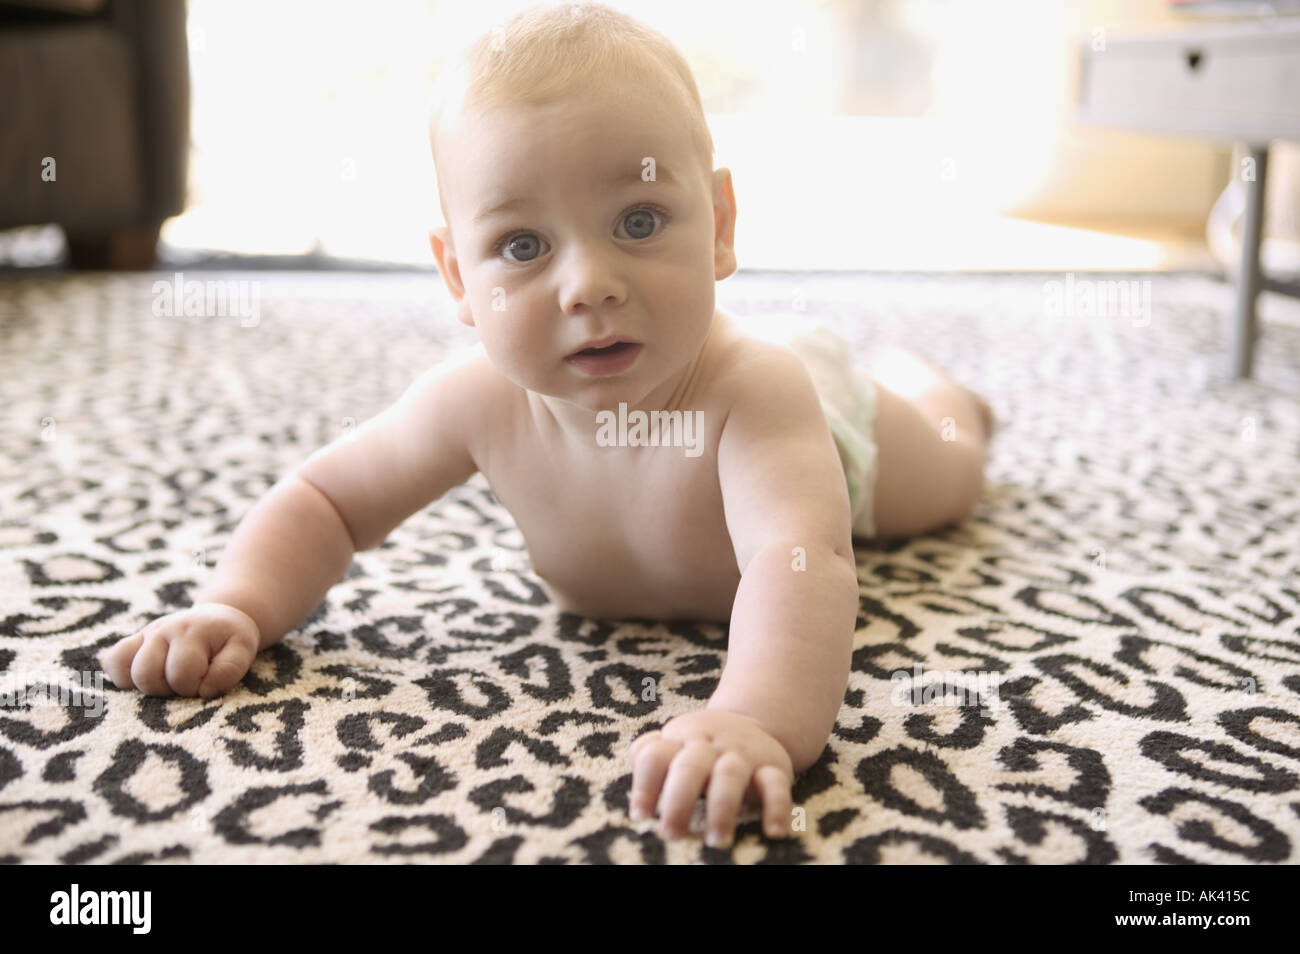 Baby Junge Kriecht Auf Leopard Print Teppich Stockfotografie Alamy